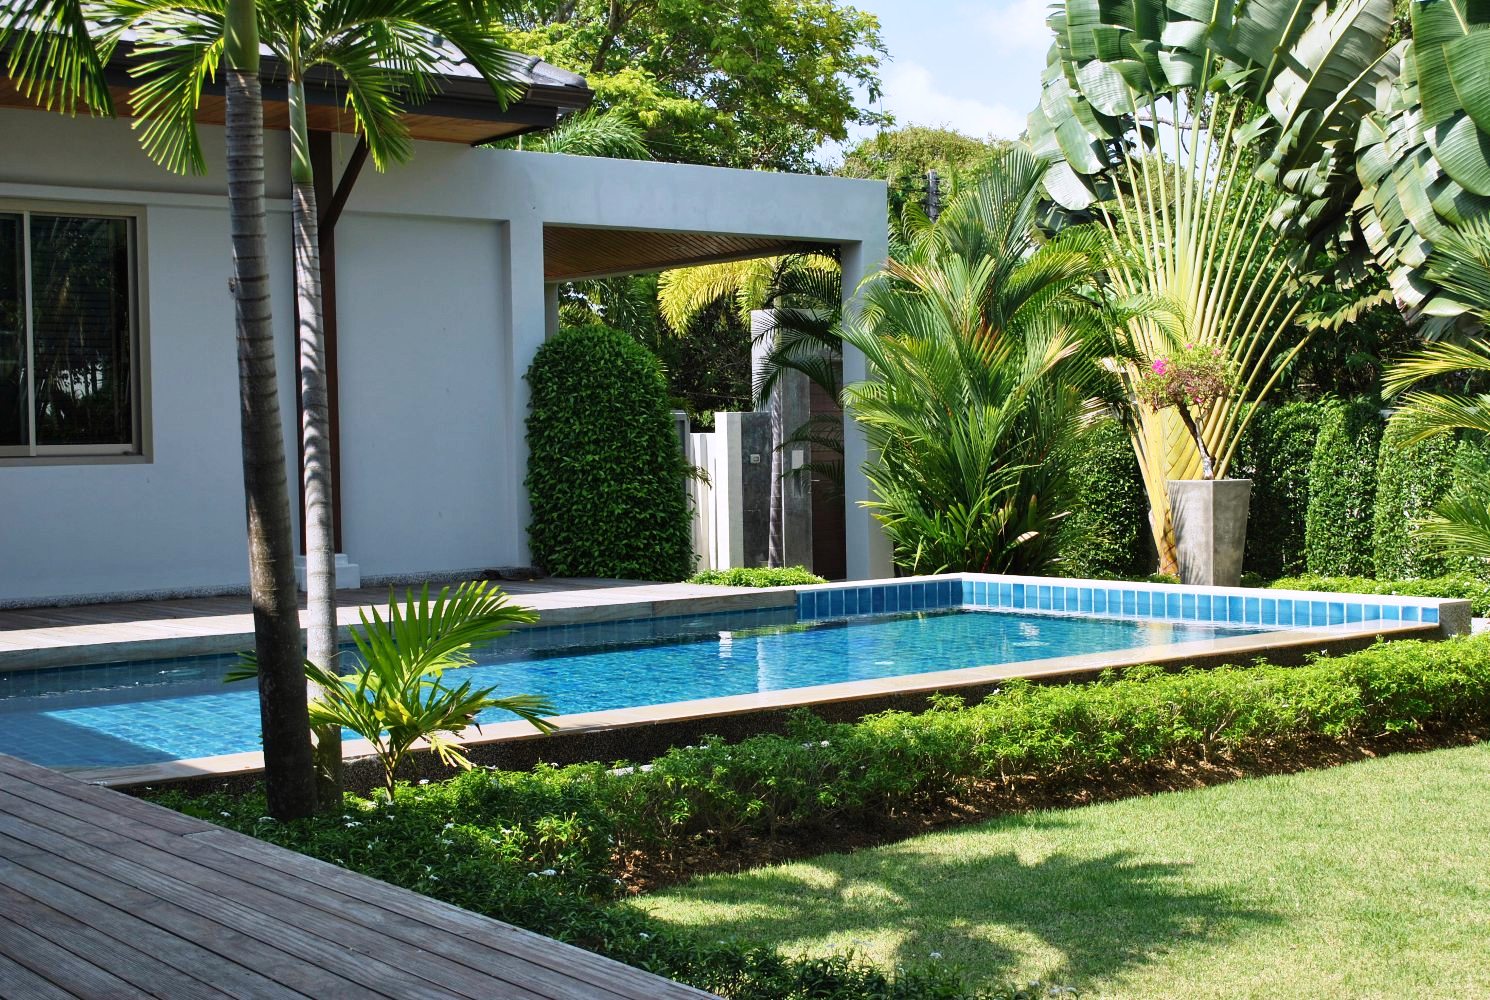 Guests sharing per bed, maximum 6 guests per villa in Nai harn Phuket